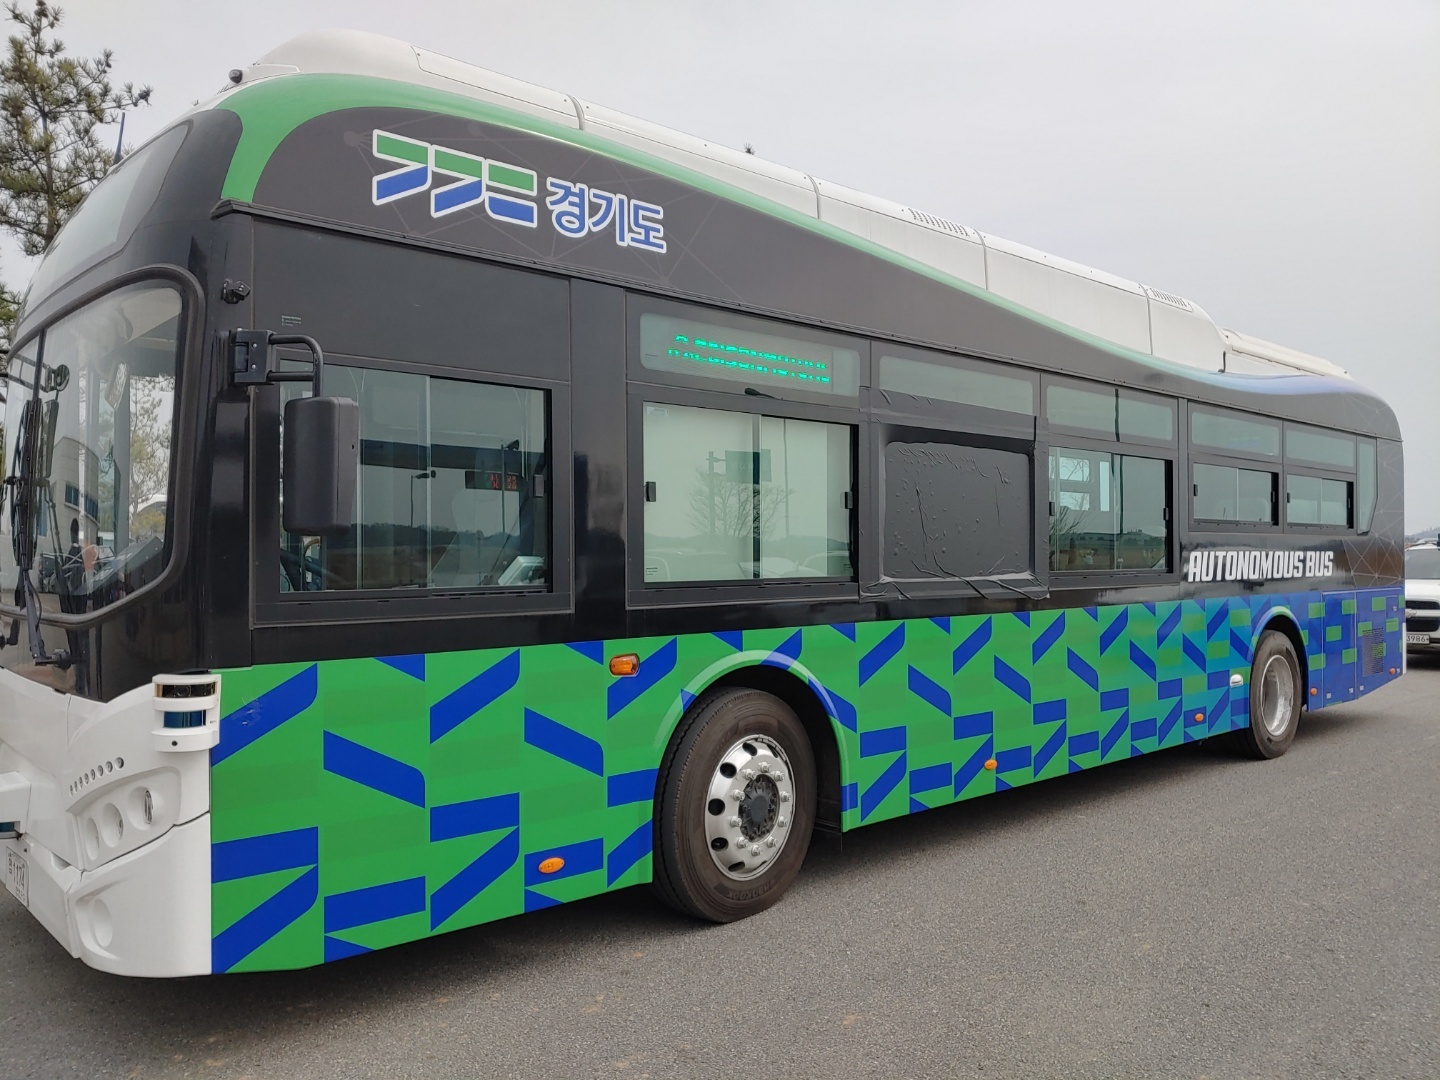 경기도는 올해 12월 판교테크노밸리에서 ‘경기도 자율협력주행버스(가칭)’를 시범 운행할 예정이다.